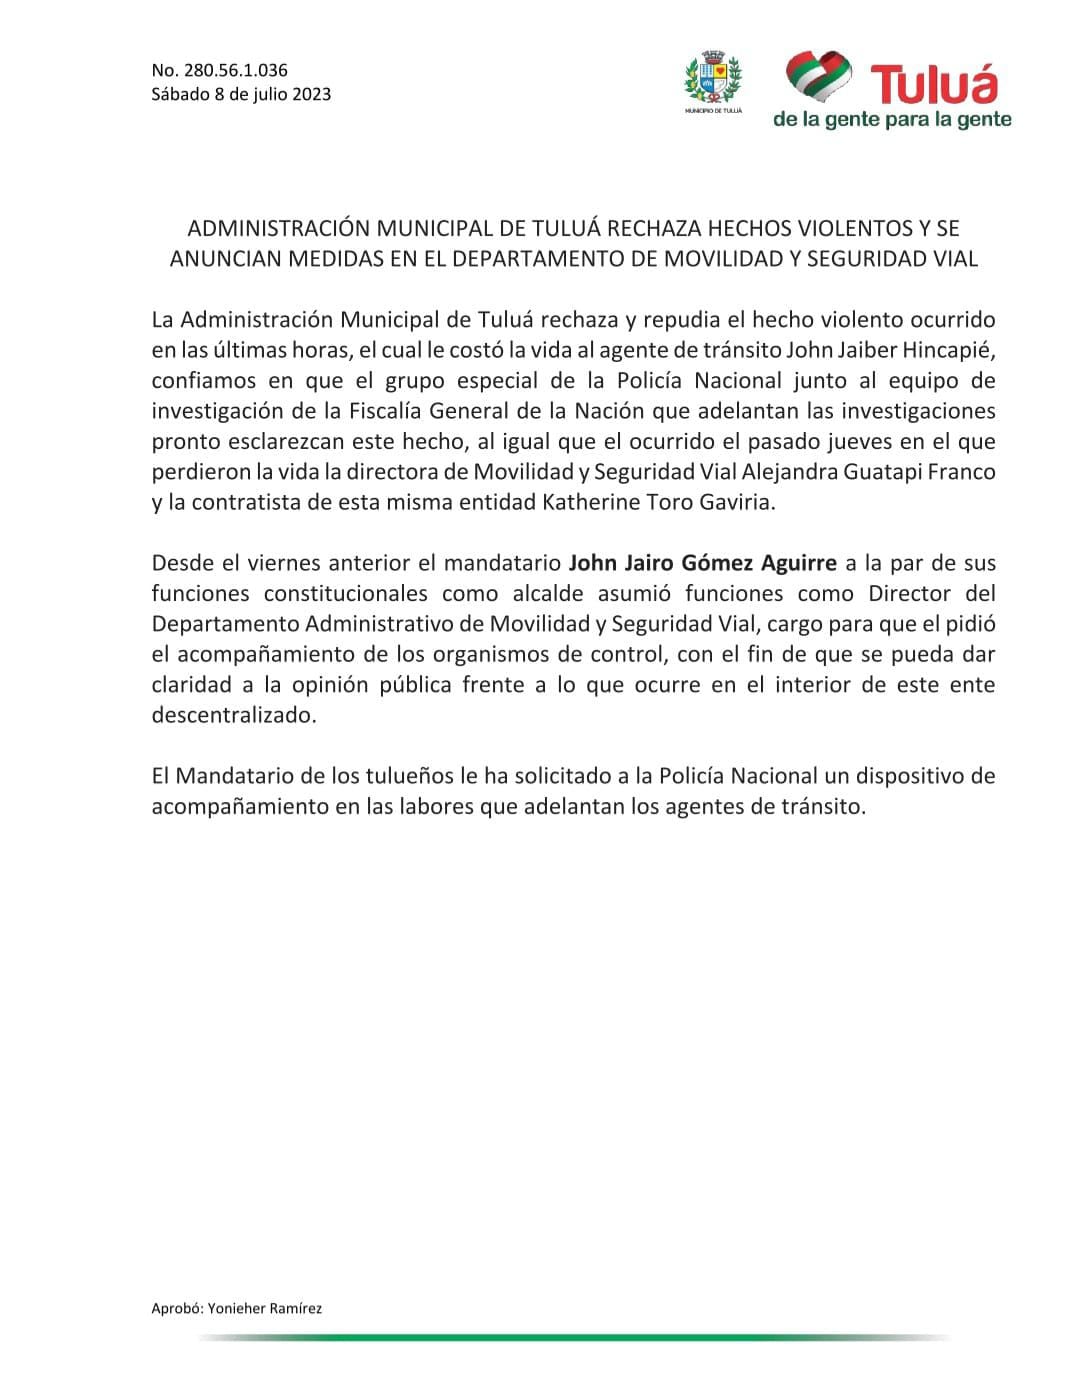 Este es el comunicado que emitió la Alcaldía de Tuluá para rechazar el asesinato del agente de tránsito.